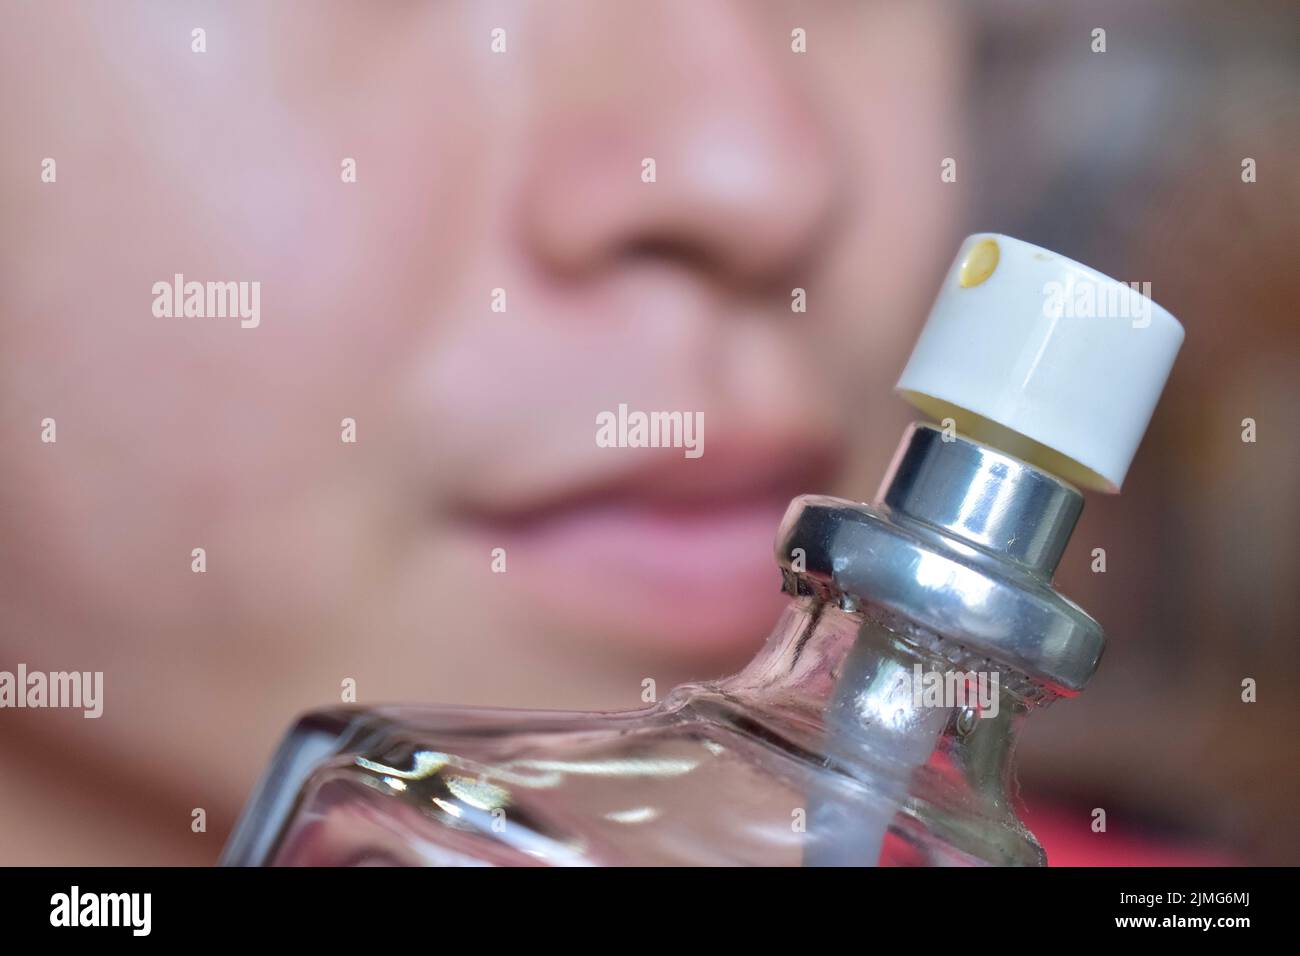 Südostasiatischer, chinesischer und myanmarischer junger Mann mit kalter Grippe bekommt Geruchverlust, genannt Anosmie. Er riecht nach Parfüm. Stockfoto